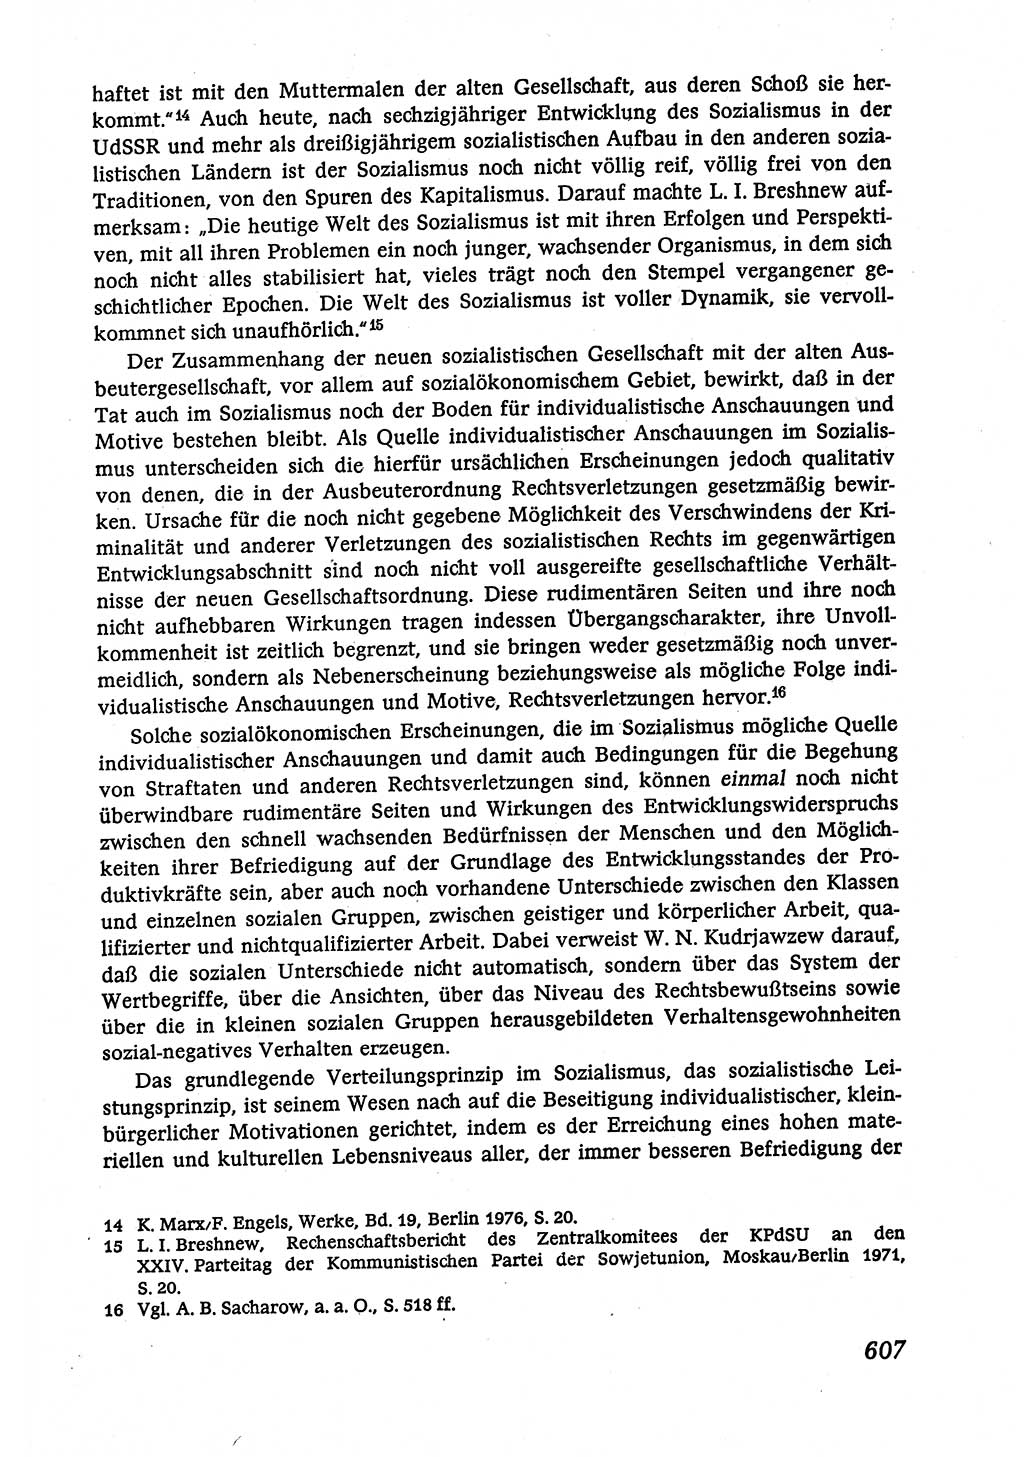 Marxistisch-leninistische (ML) Staats- und Rechtstheorie [Deutsche Demokratische Republik (DDR)], Lehrbuch 1980, Seite 607 (ML St.-R.-Th. DDR Lb. 1980, S. 607)